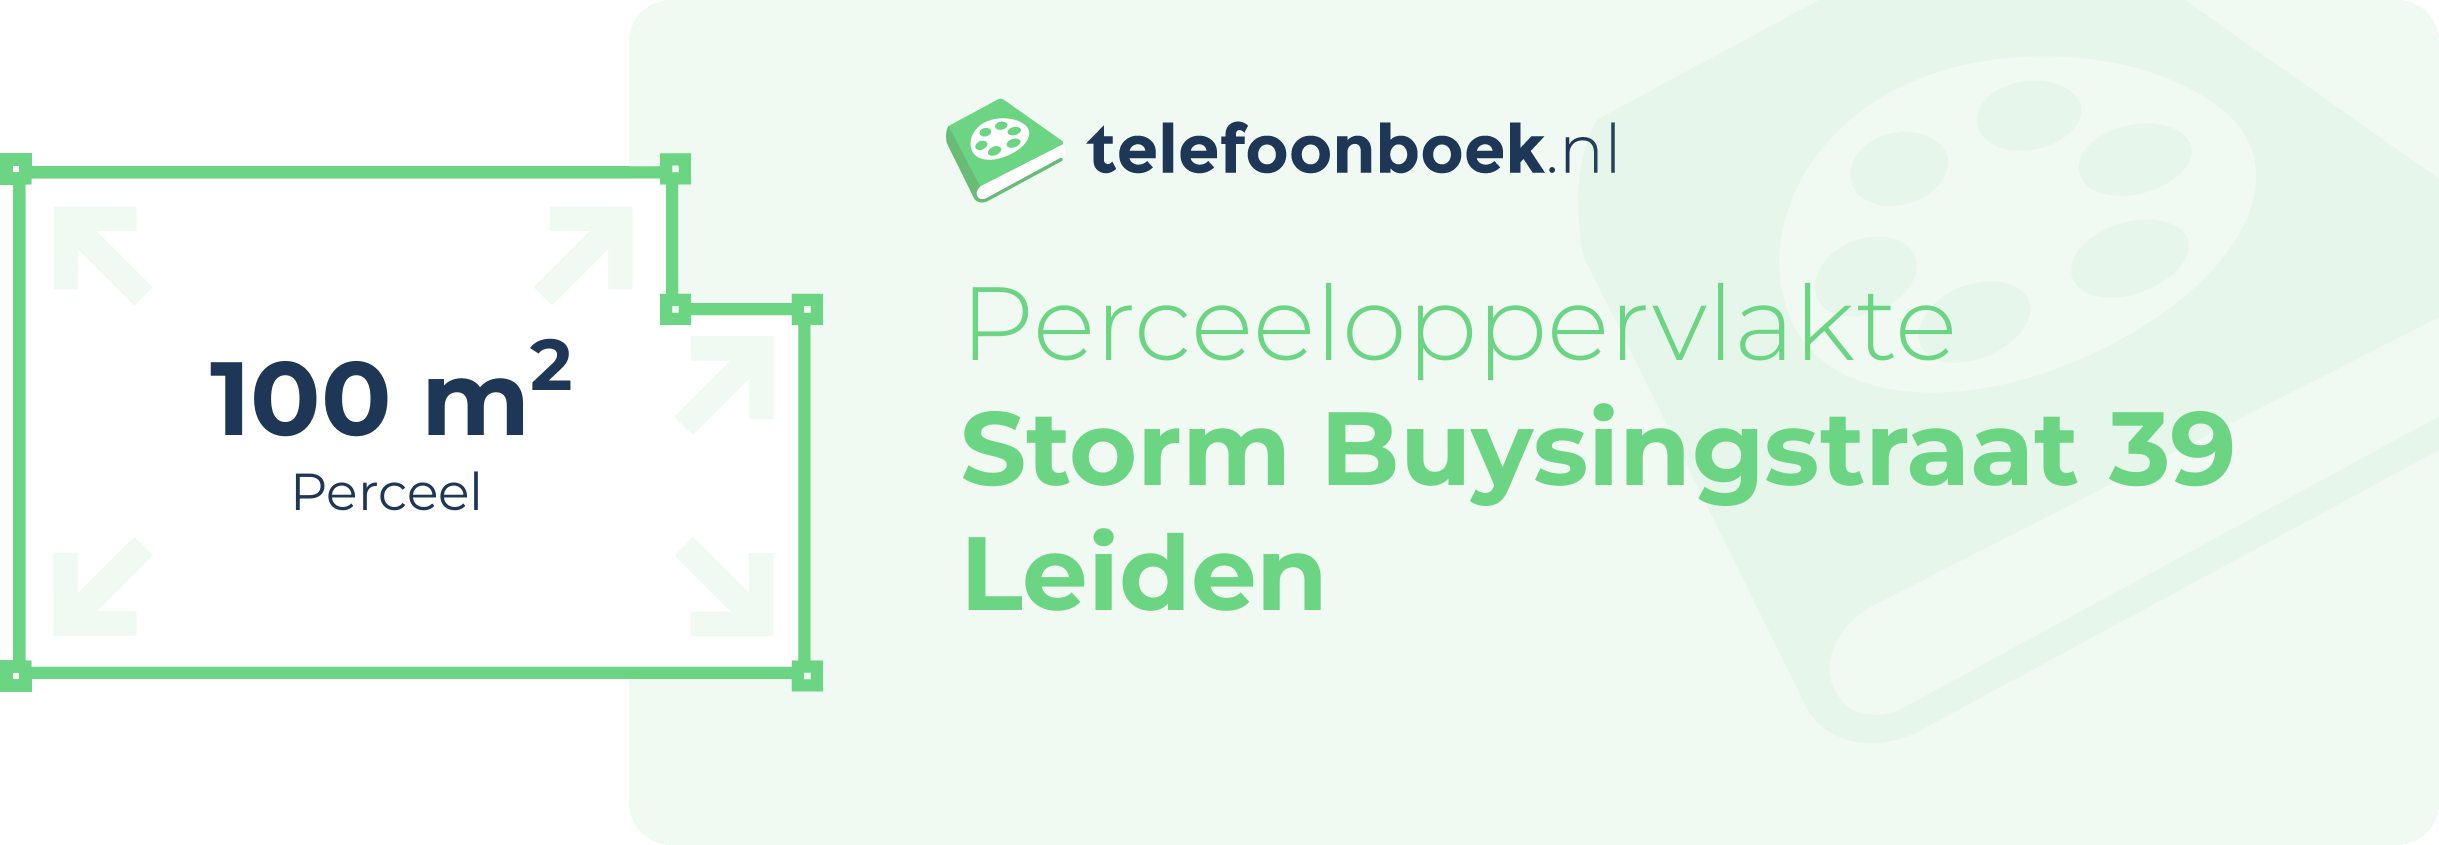 Perceeloppervlakte Storm Buysingstraat 39 Leiden